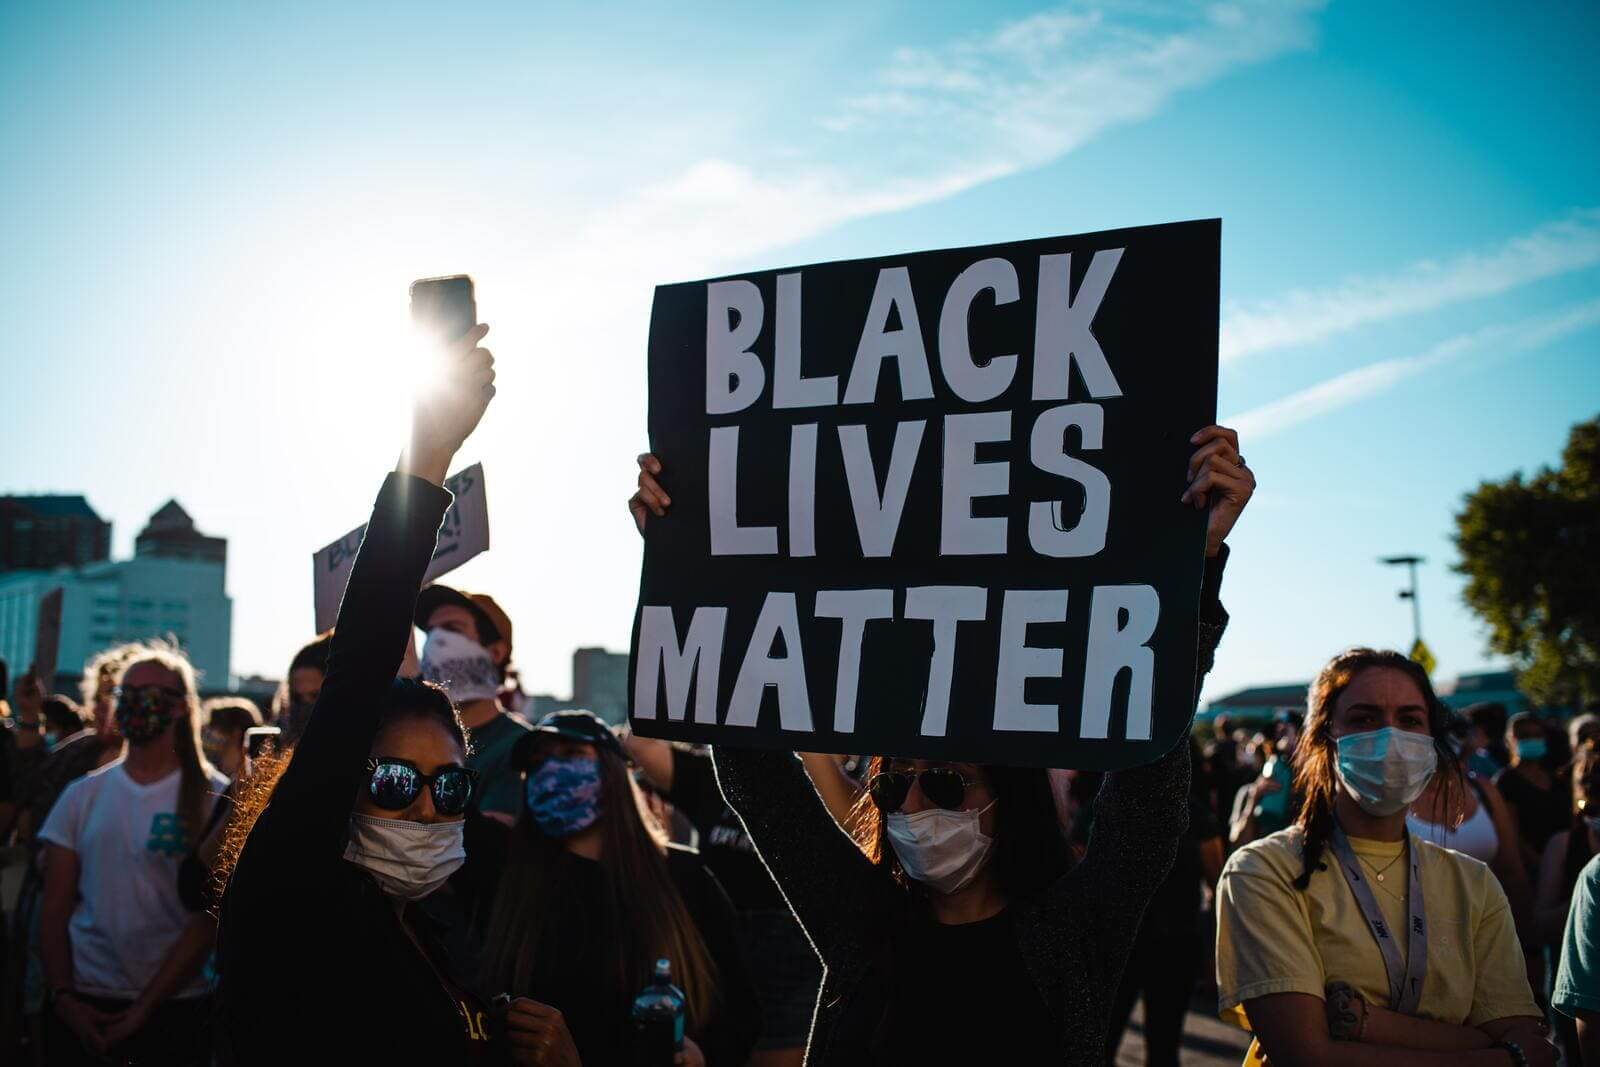 Protestors for Black Lives Matter